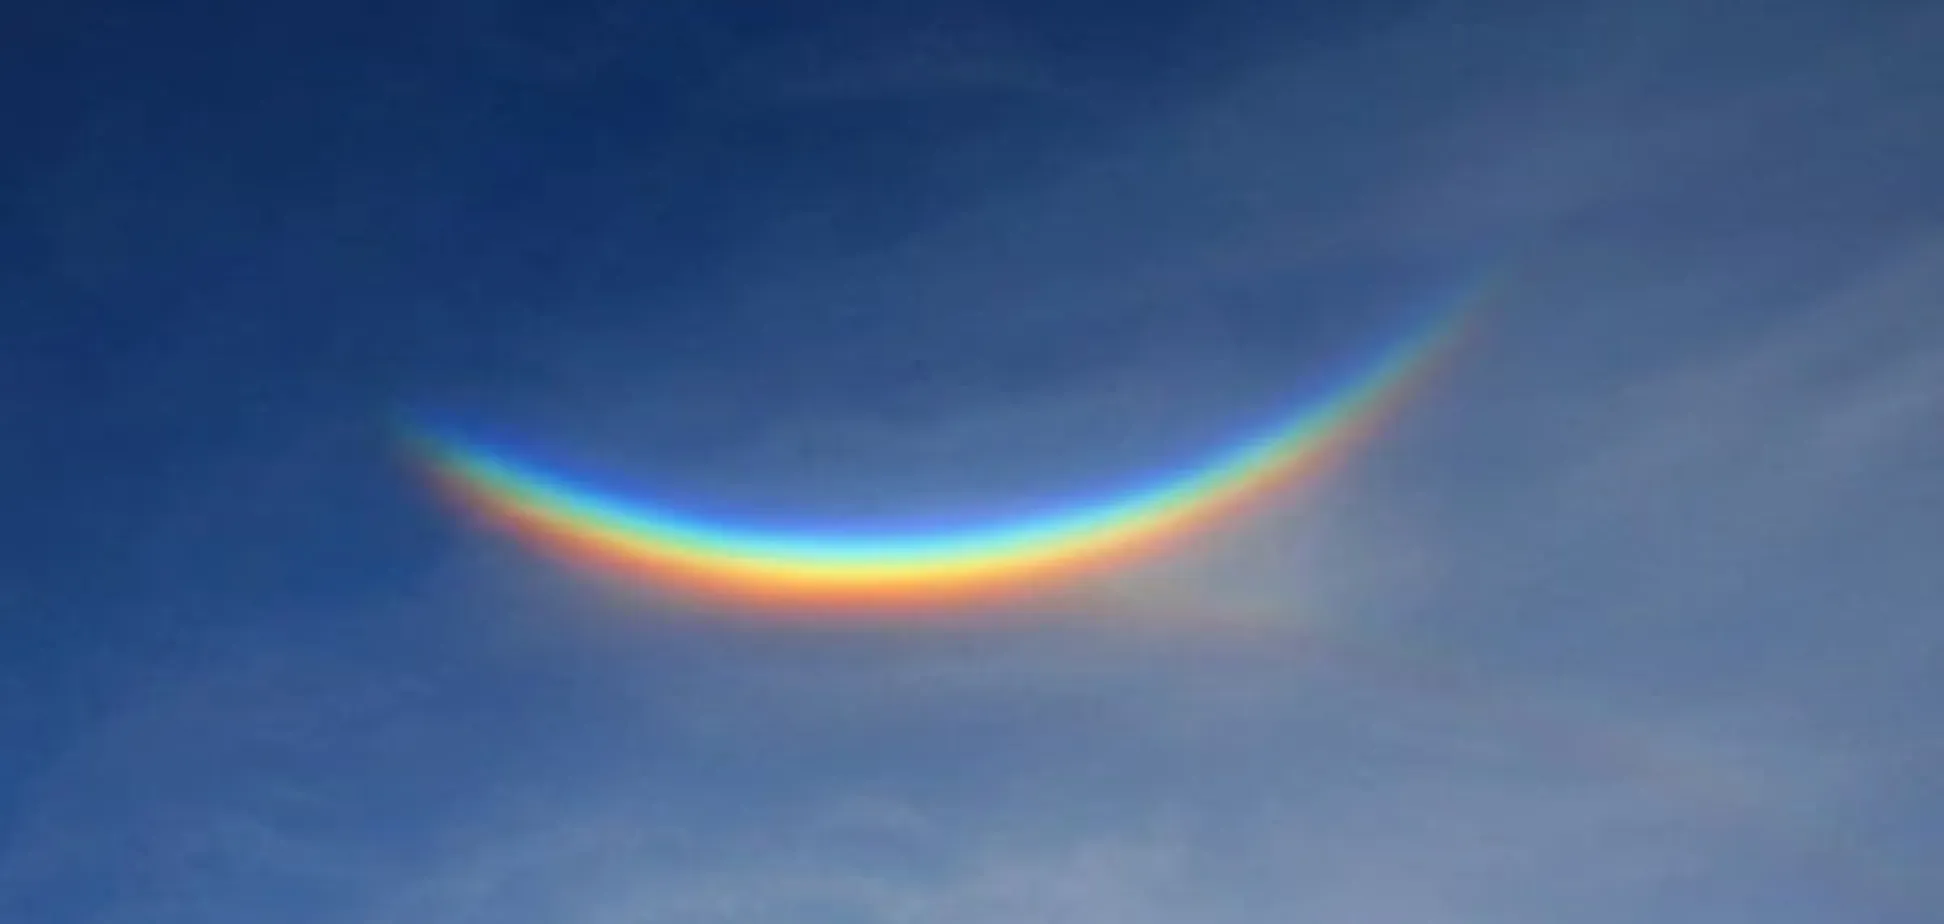 Чудо природы: опубликованы невероятные фото перевернутой радуги